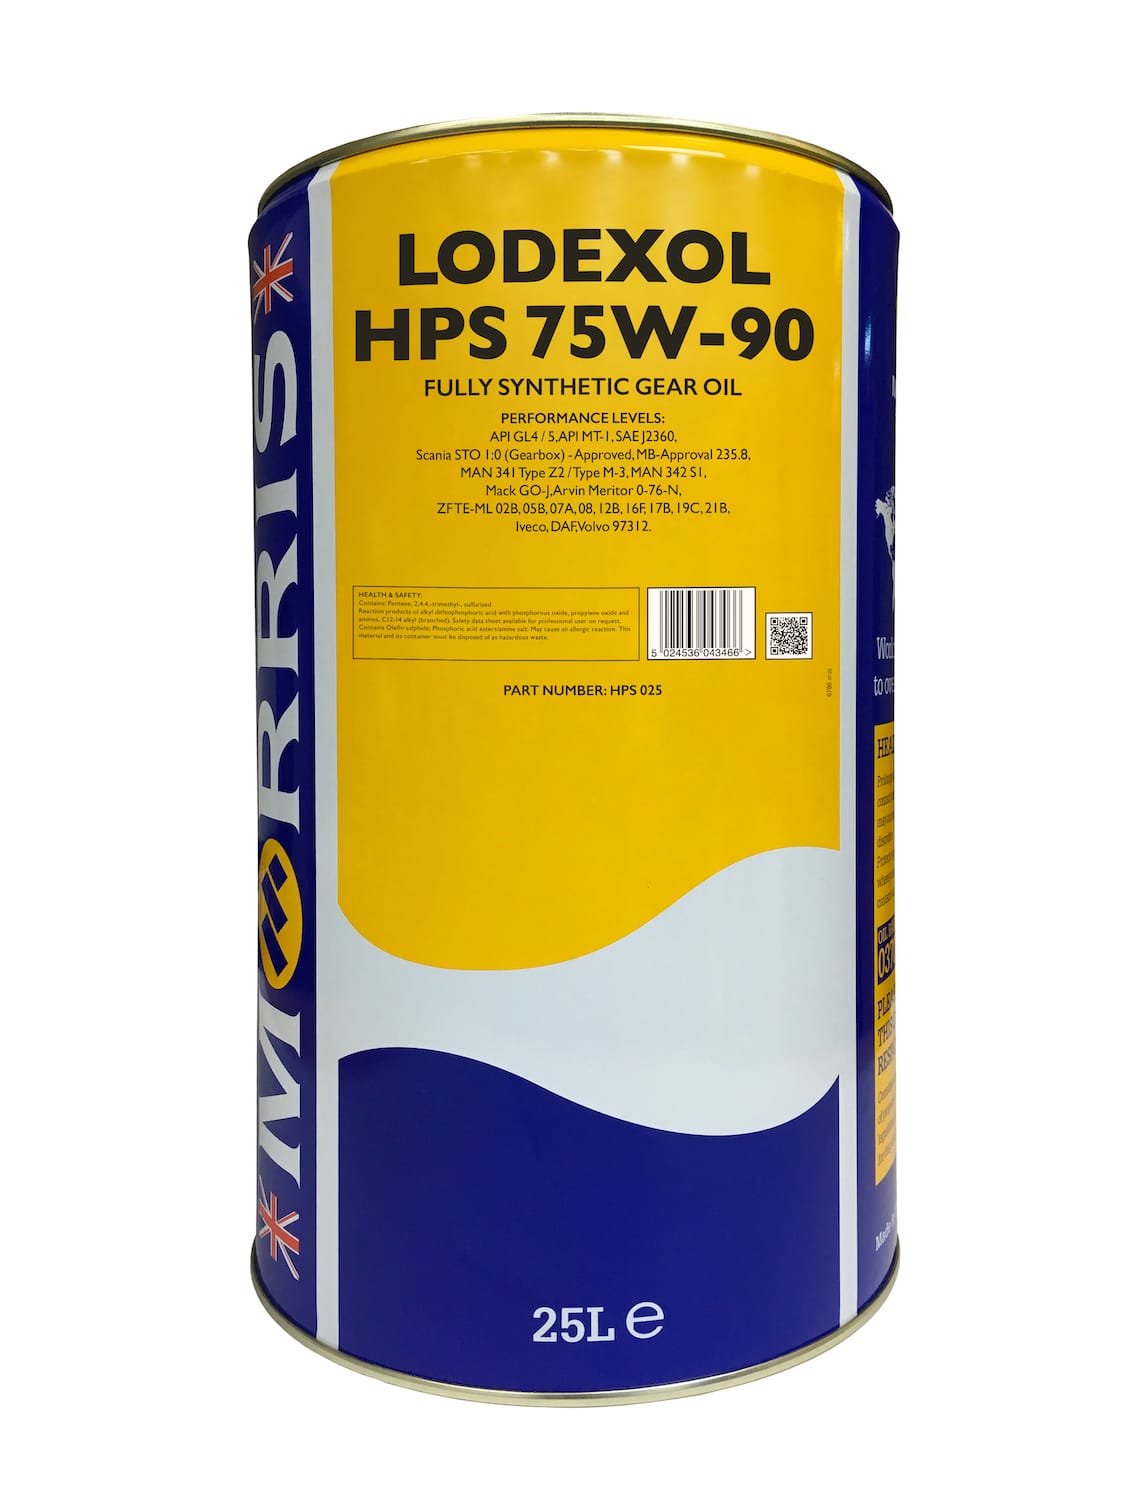 Lodexol HPS 75W-90